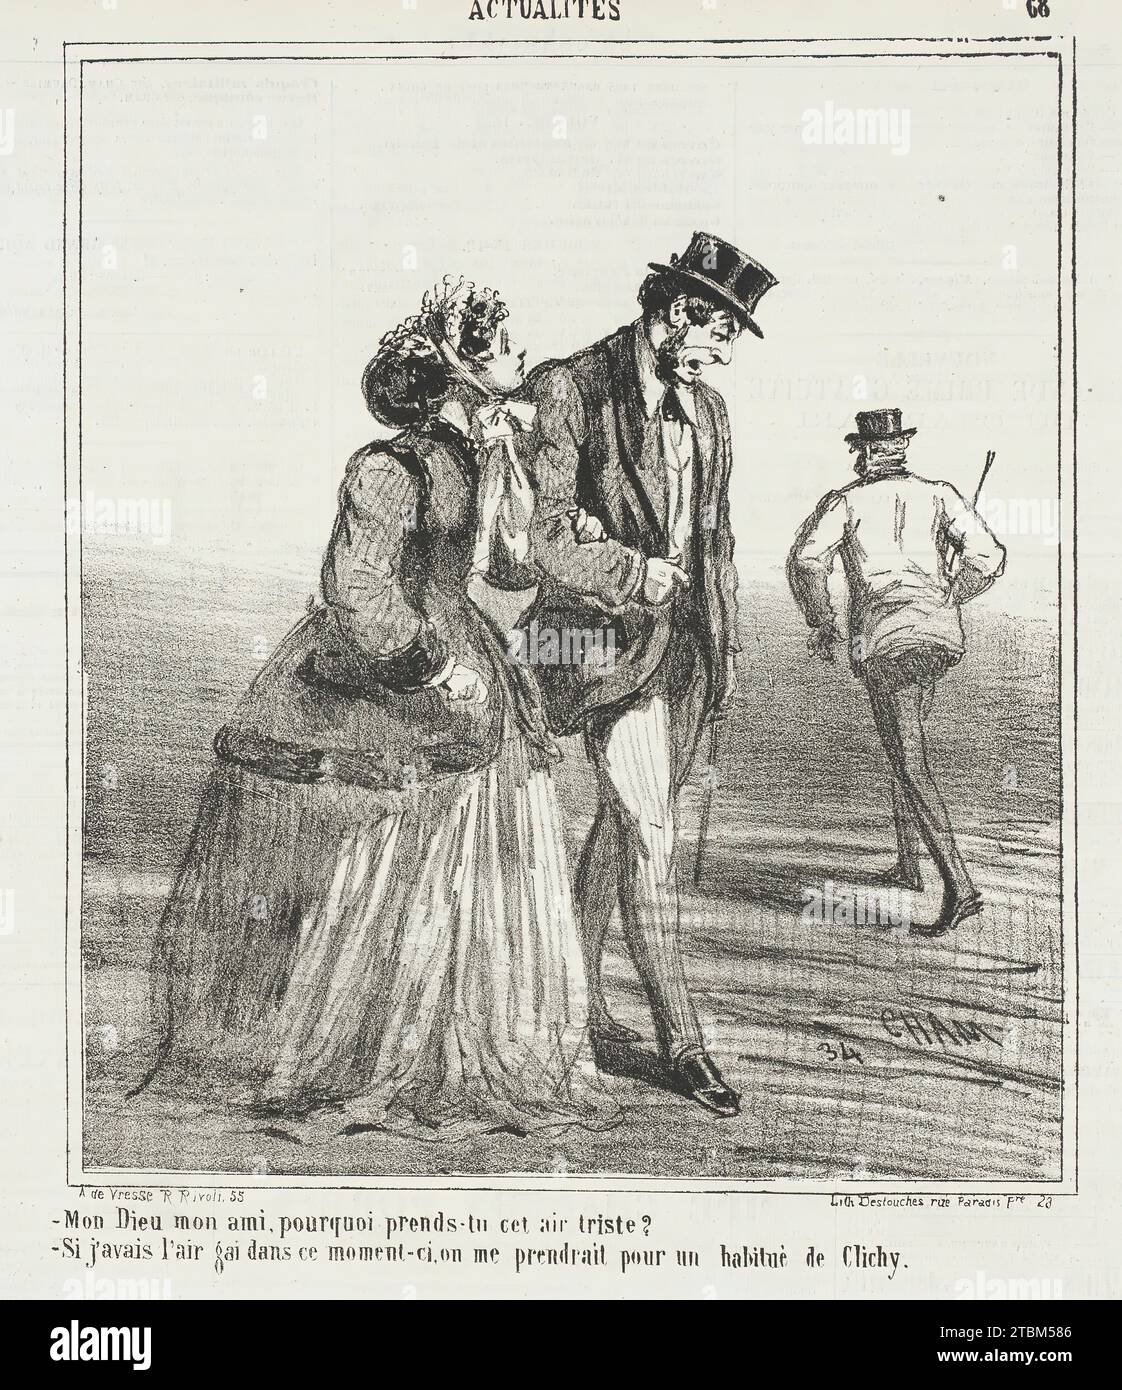 Mon Dieu, mon ami, pourquoi prends tu cet air triste? -Si j'avais l'air gai dans ce moment-ci, on me prendrait pour un habitu&#xe9; de Clichy, 1867. From Actualit&#xe9;s. Stock Photo